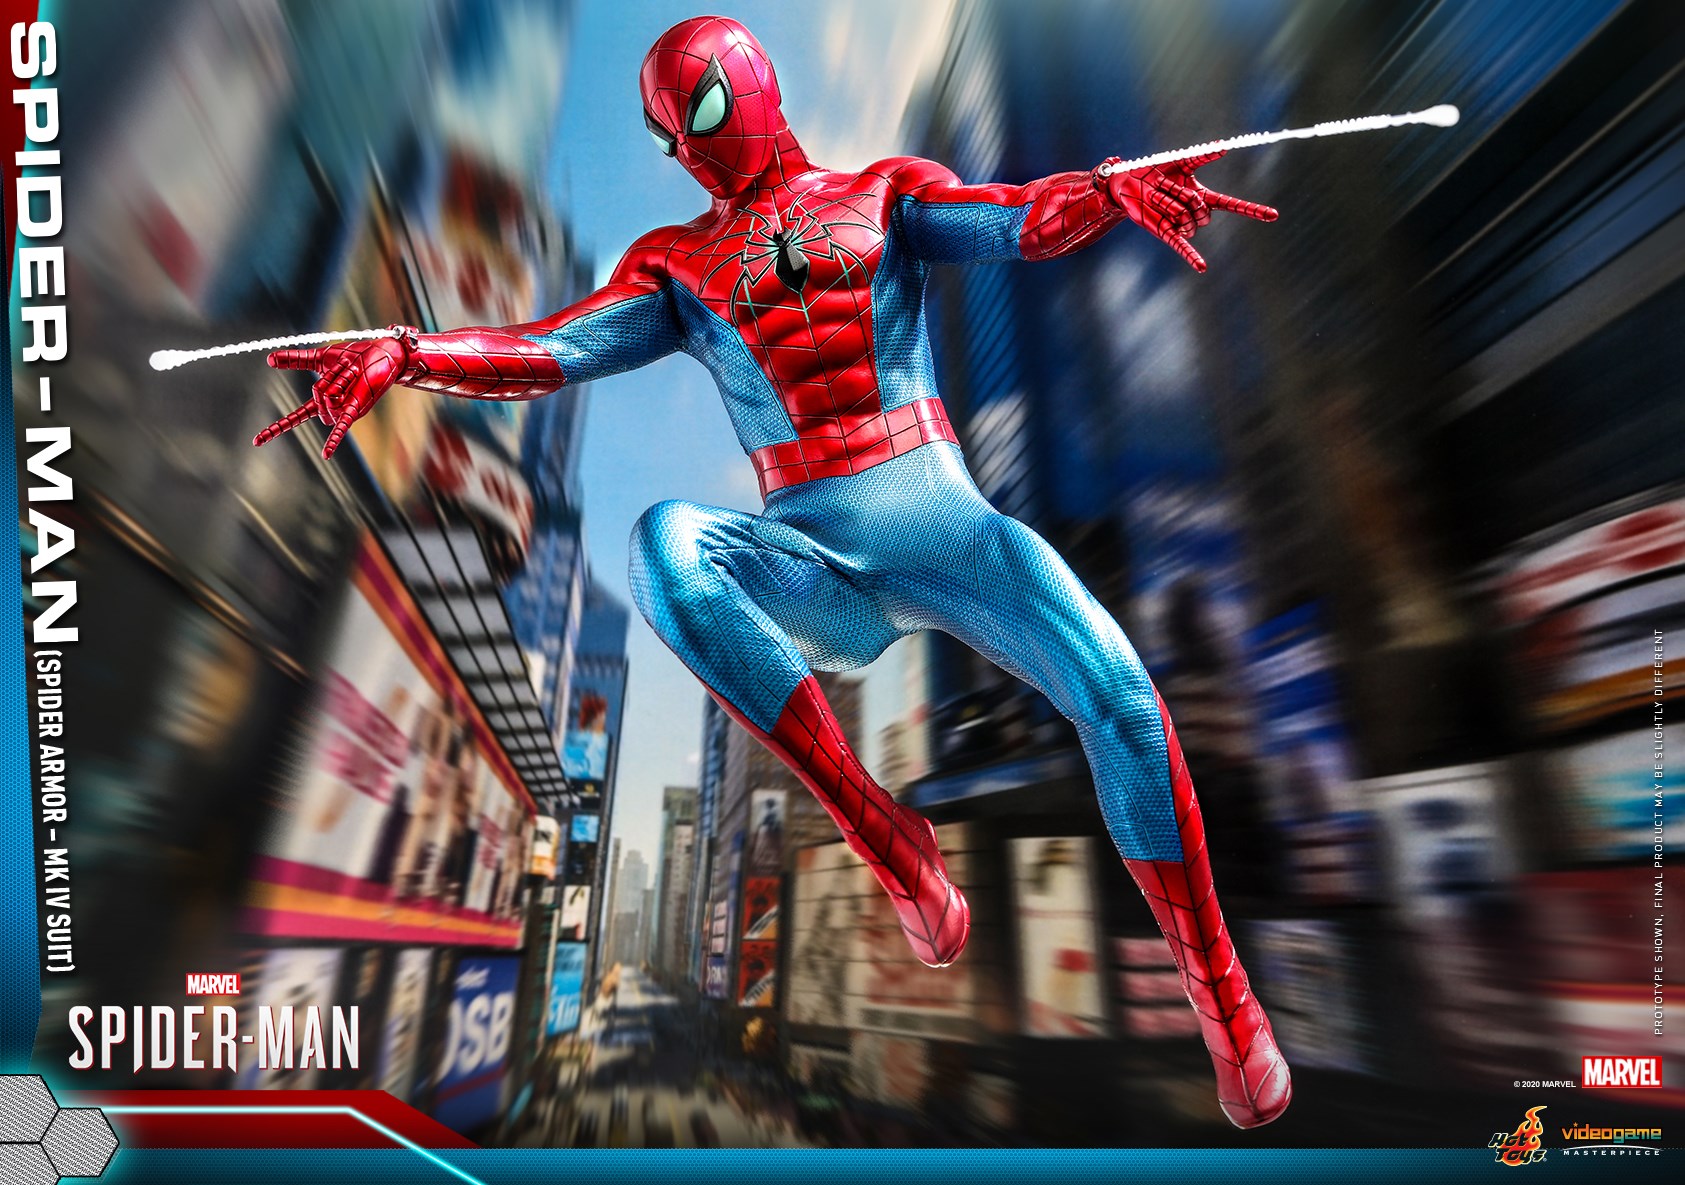 Hot Toys - VGM43 - Marvel's Spider-Man (PS4) - Spider-Man (Spider Armor - MK IV Suit)